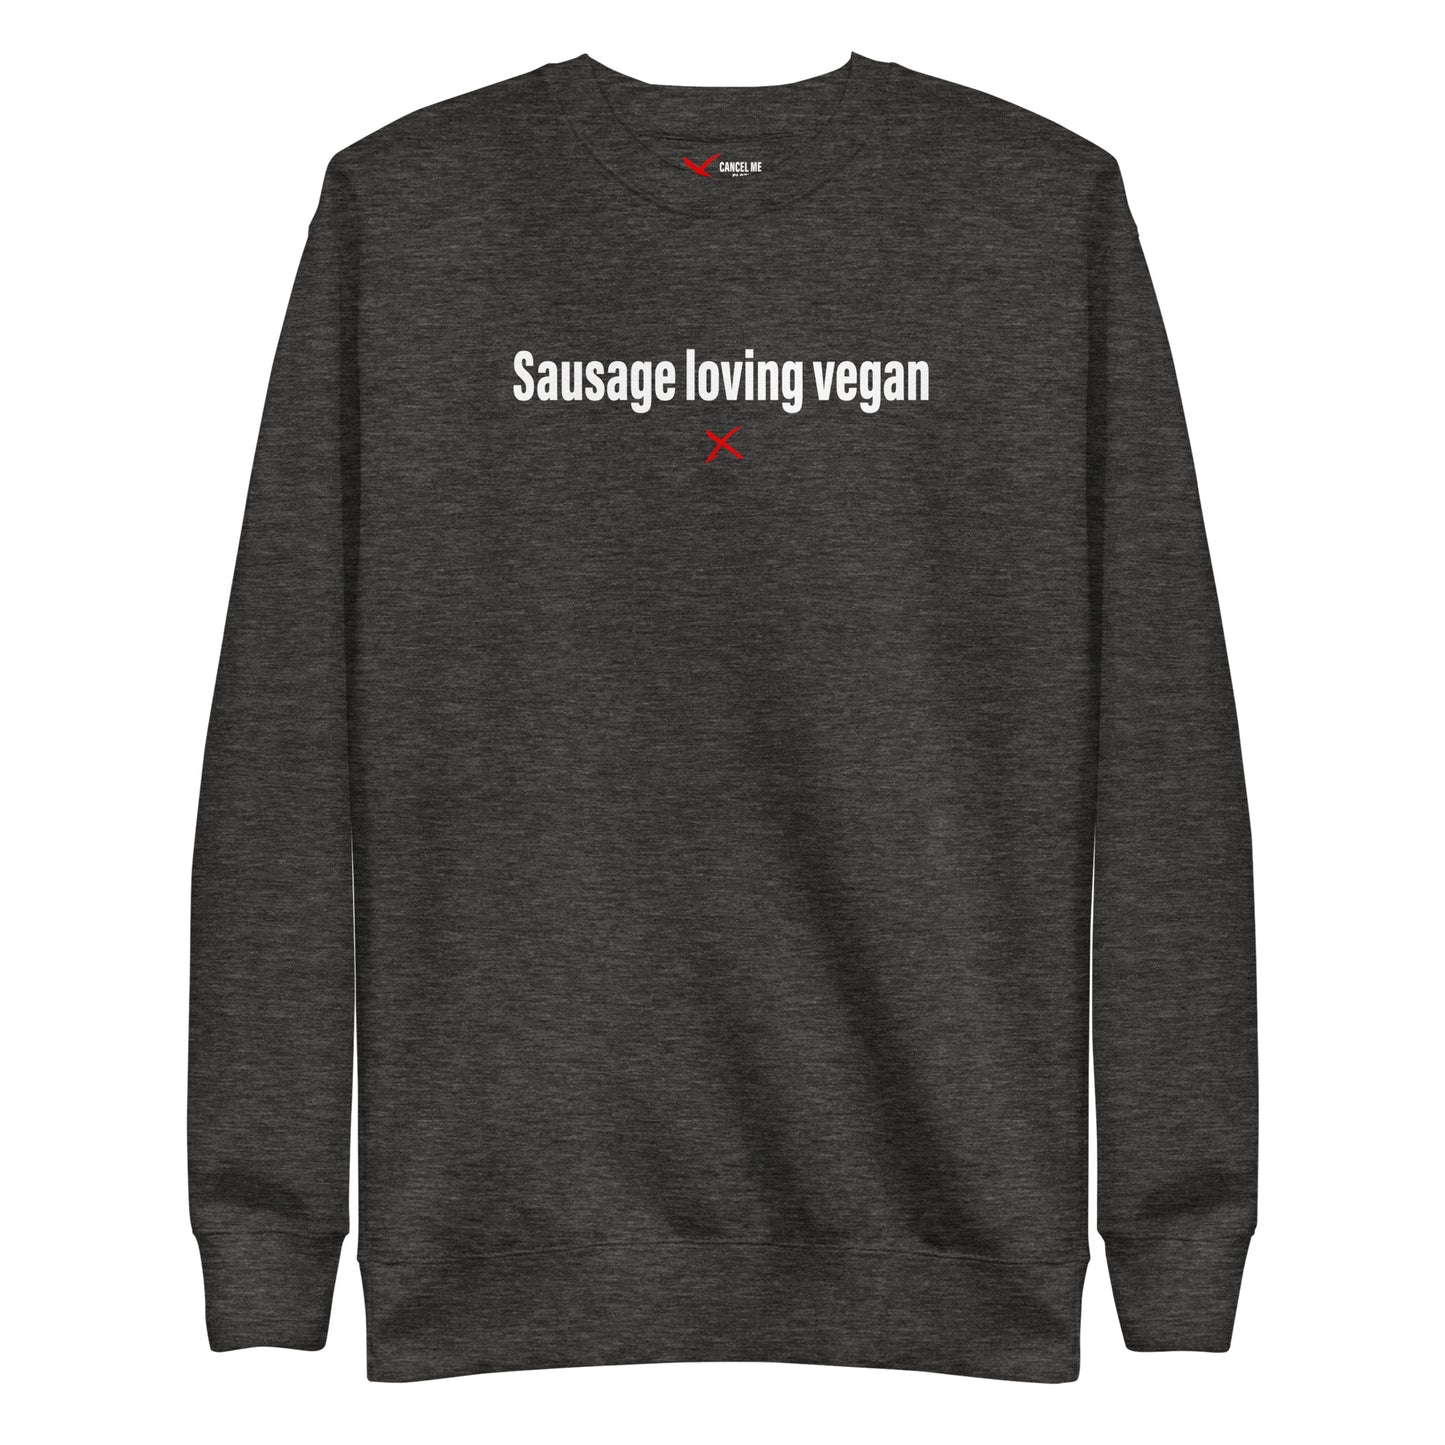 Sausage loving vegan - Sweatshirt